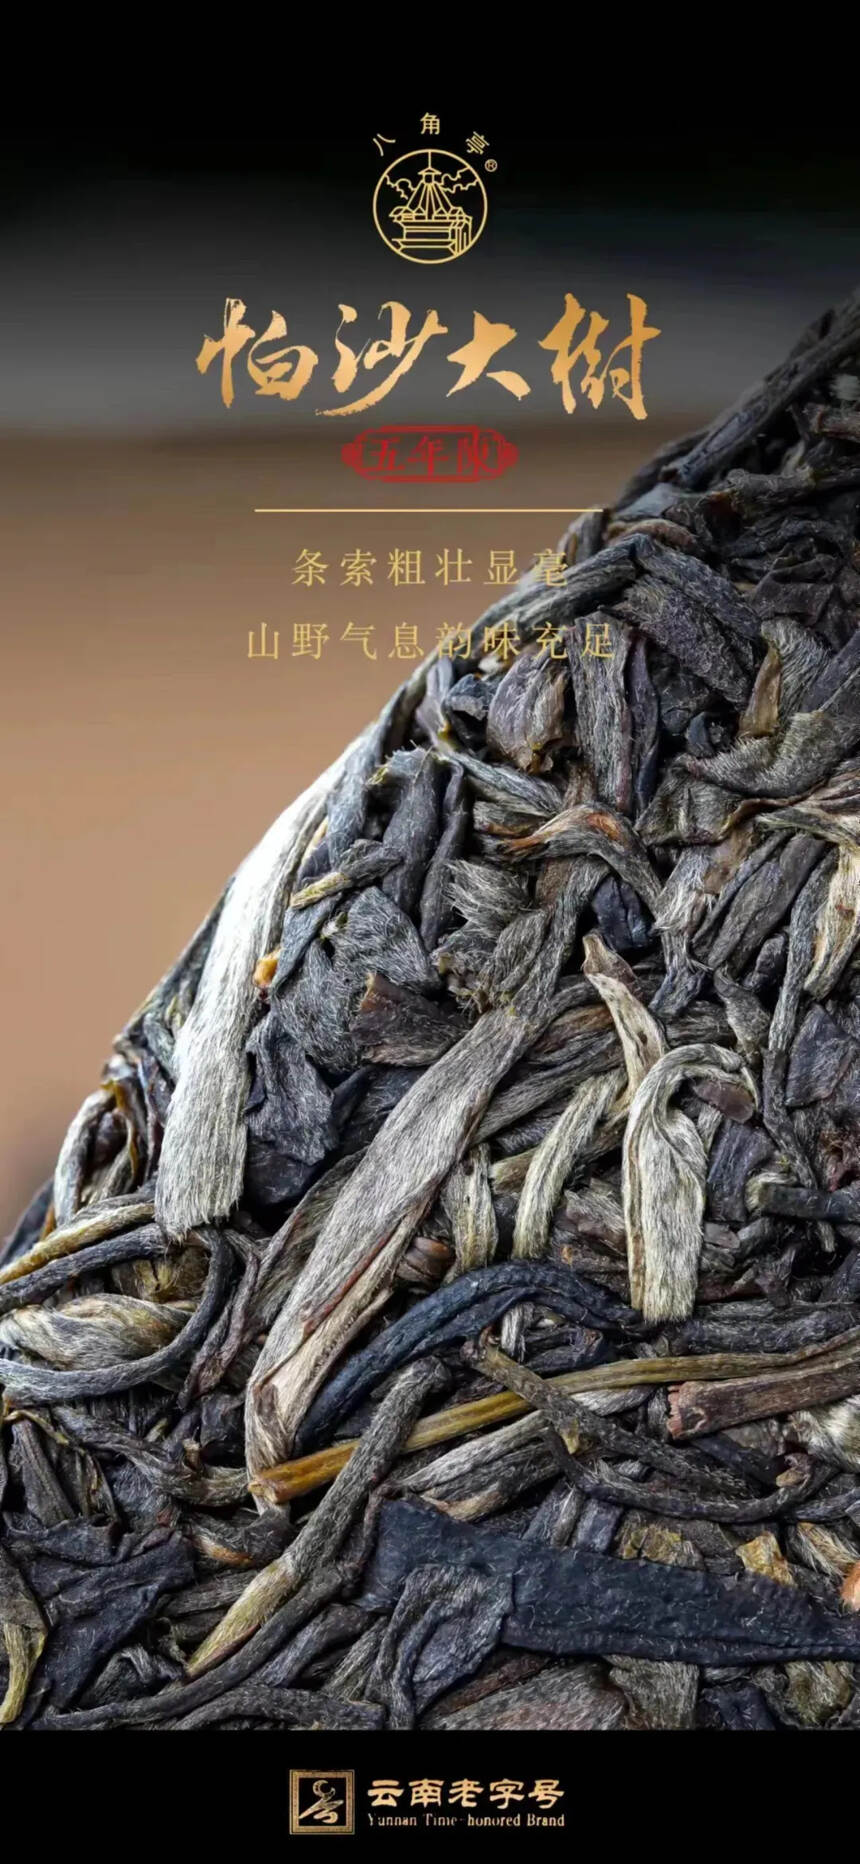 八角亭帕沙大树茶
精选帕沙五年陈明前春茶精制而成。